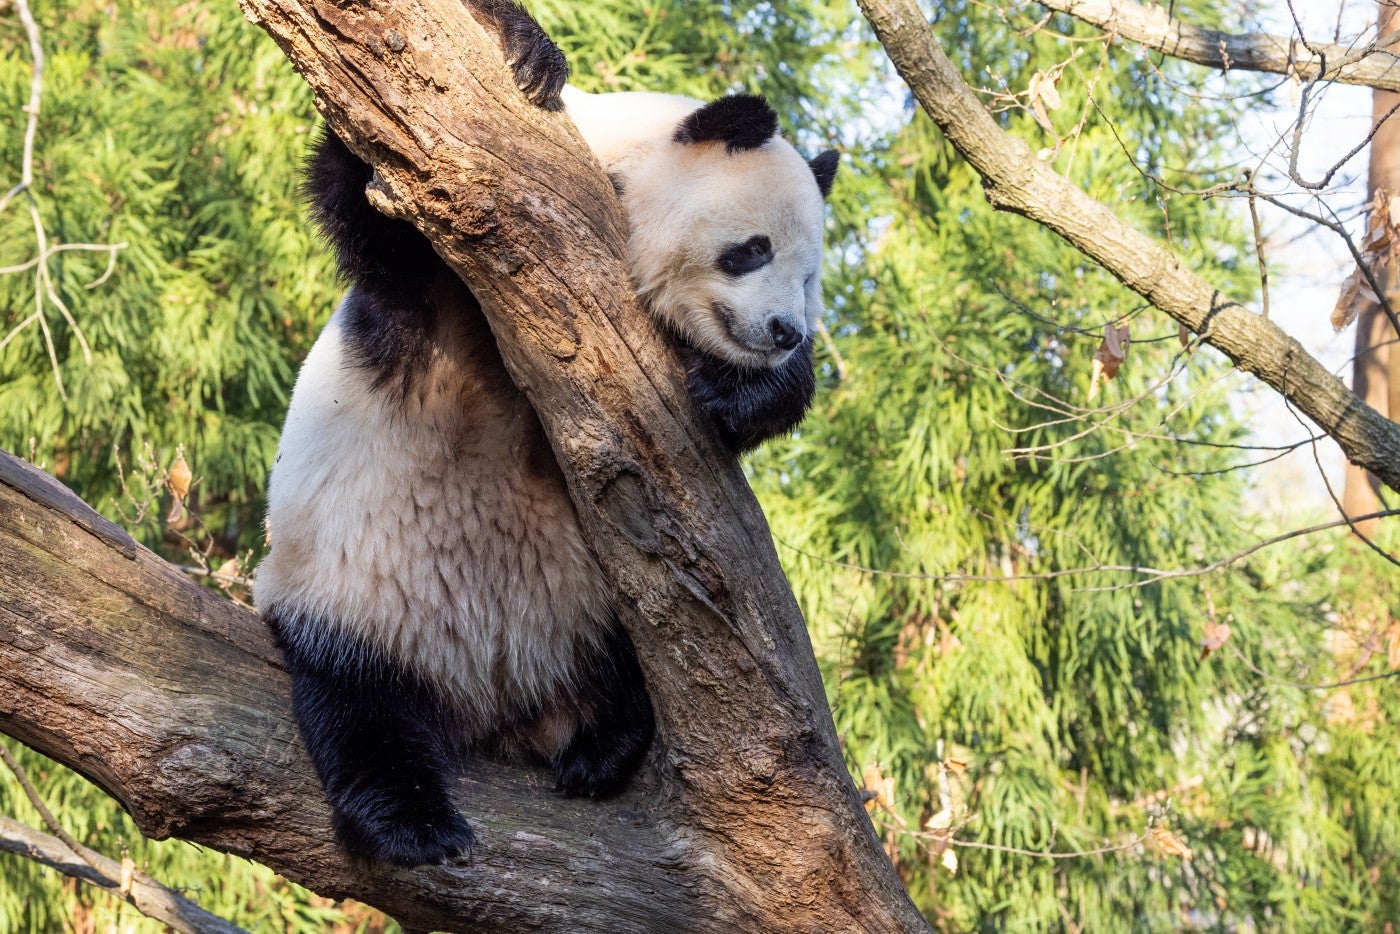 Giant panda Tian Tian rests in a tree in his outdoor habitat. 